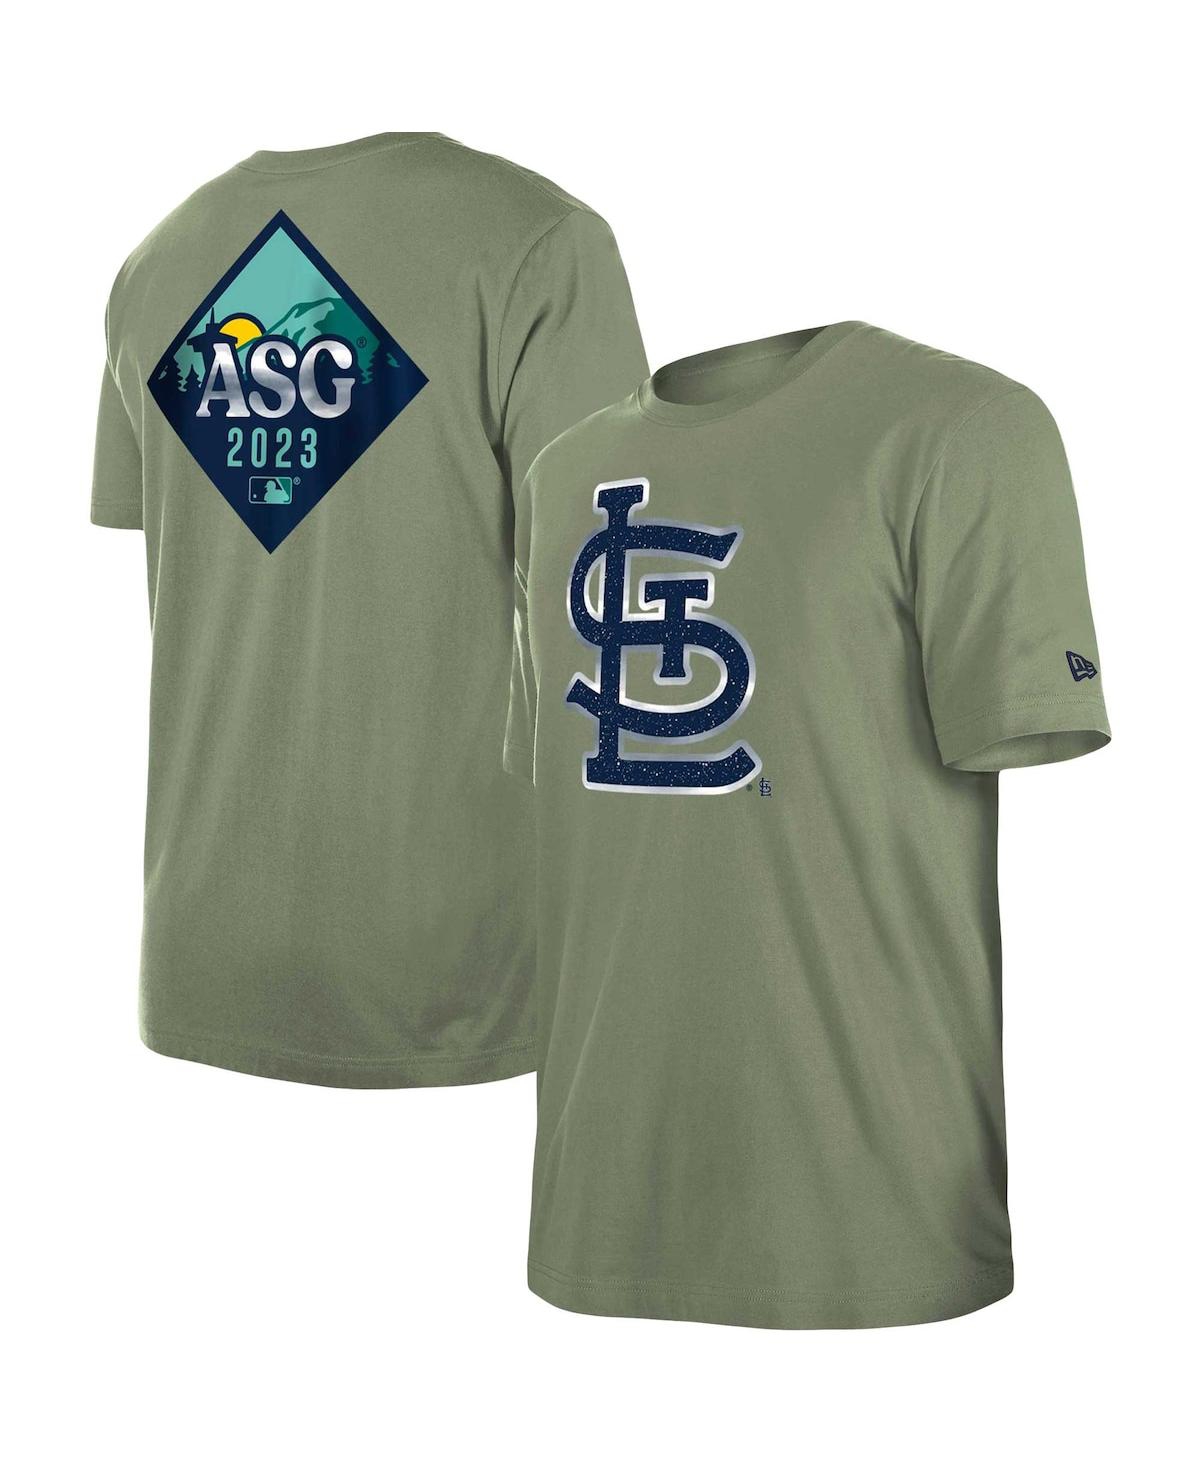 New Era Men's  Green St. Louis Cardinals 2023 All-star Game Evergreen T-shirt